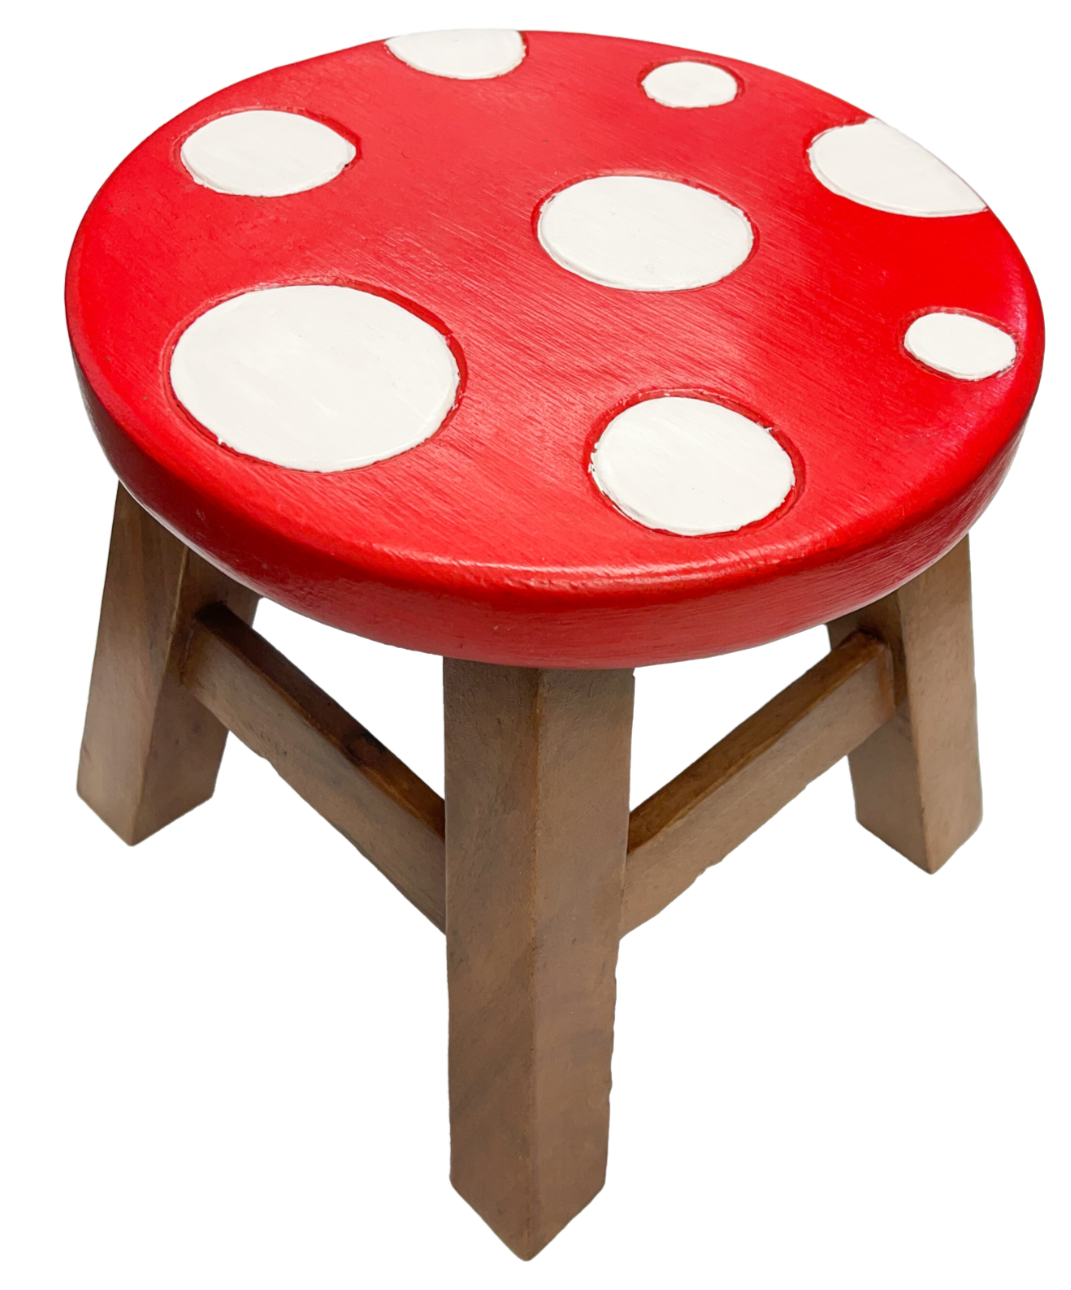 Kid Stool - Red Mushroom